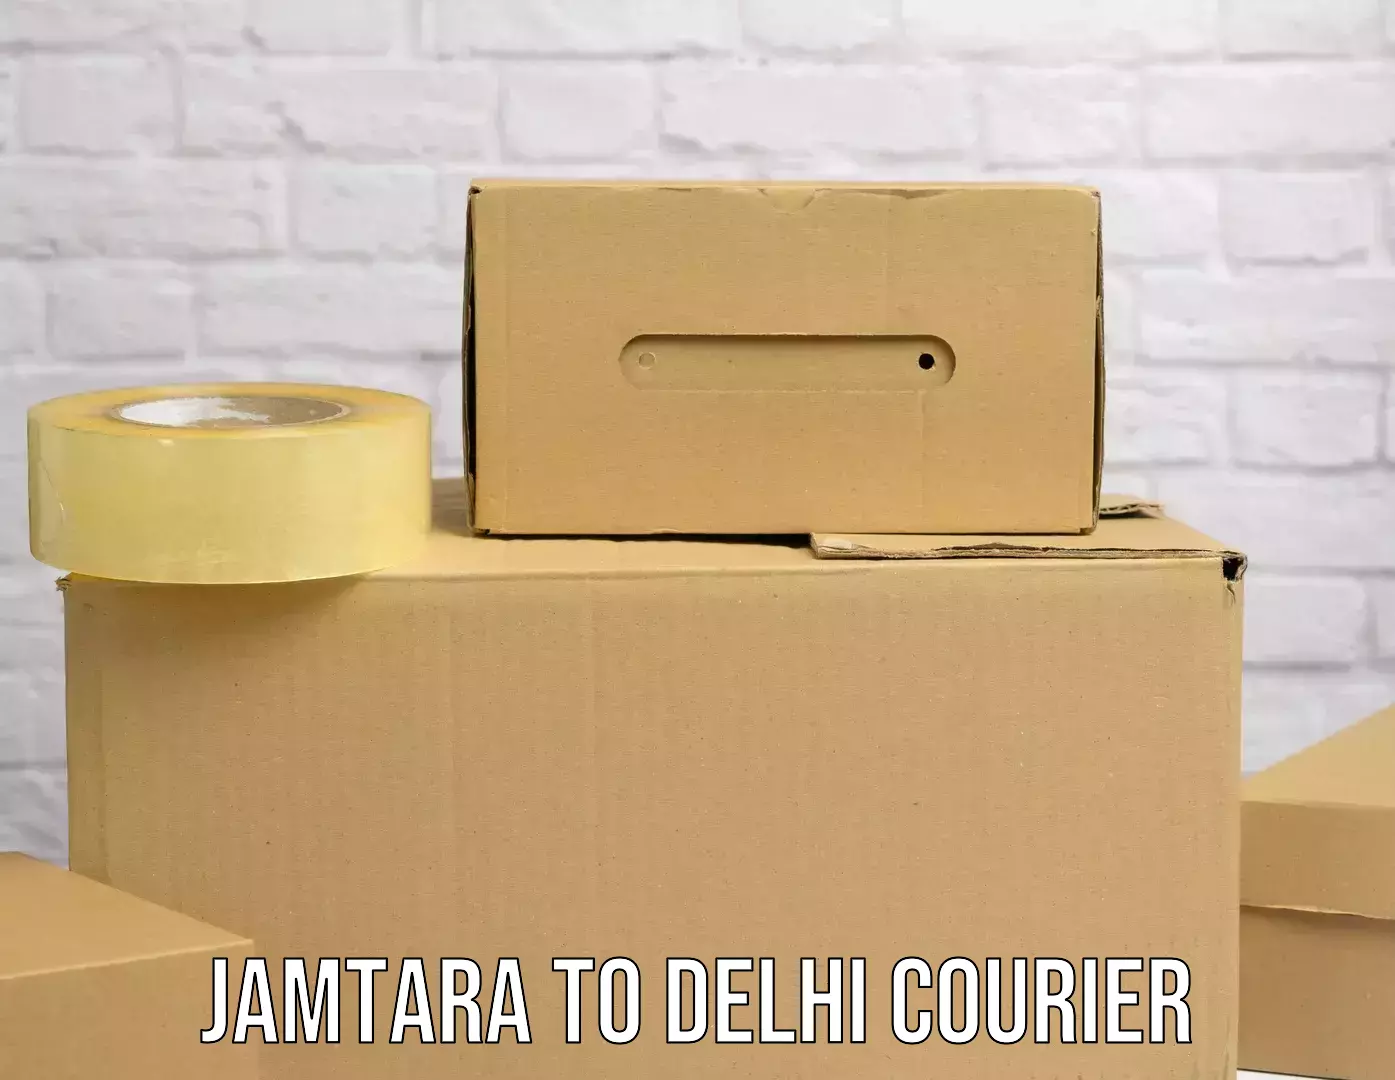 Express delivery network Jamtara to Kalkaji